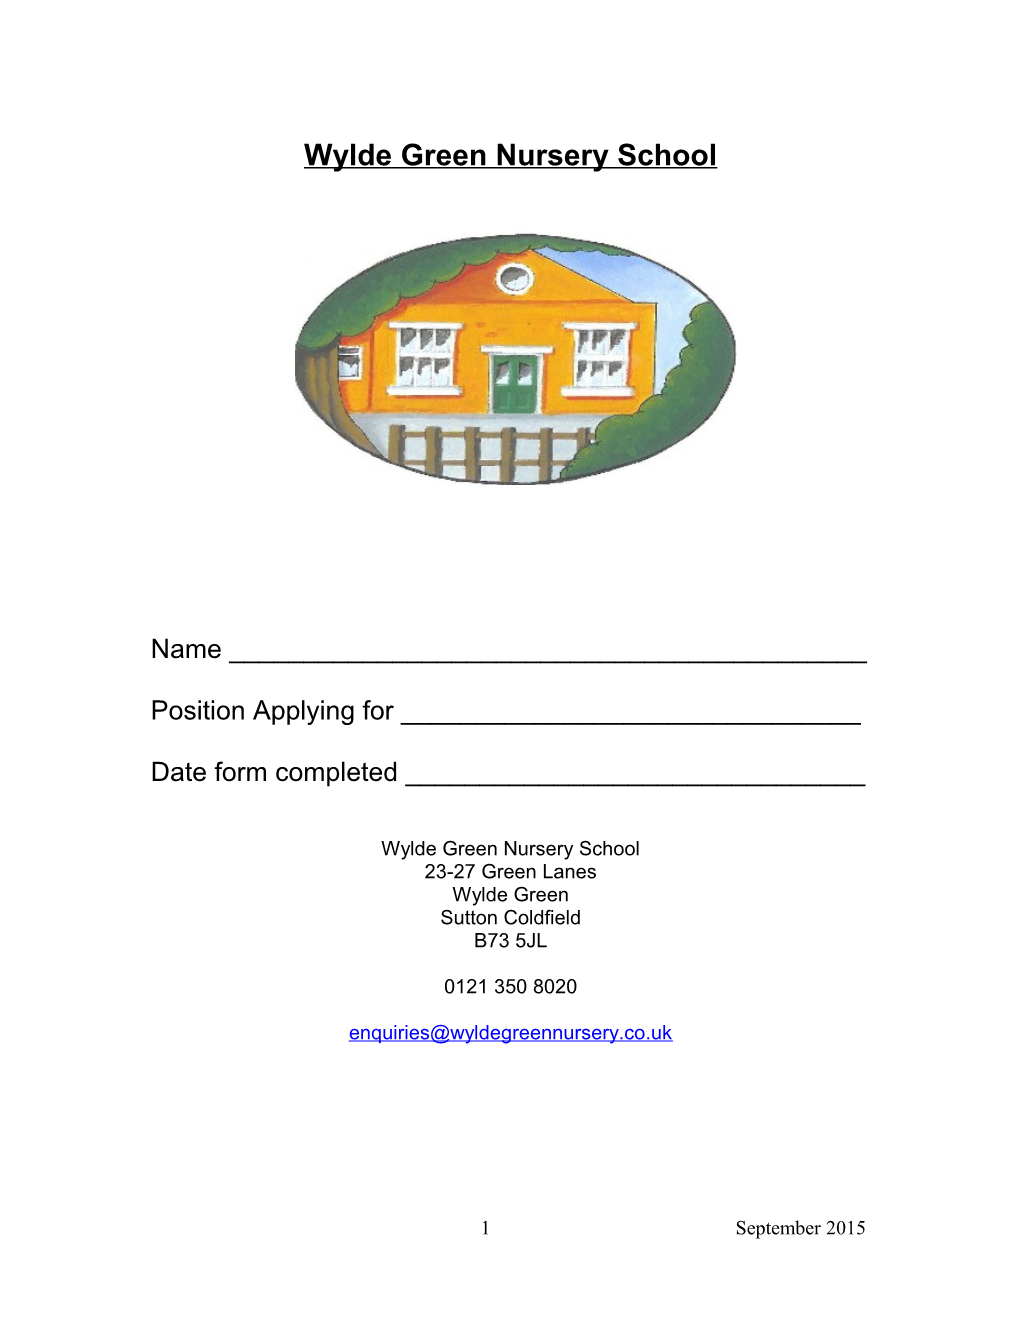 Wylde Green Nursery School